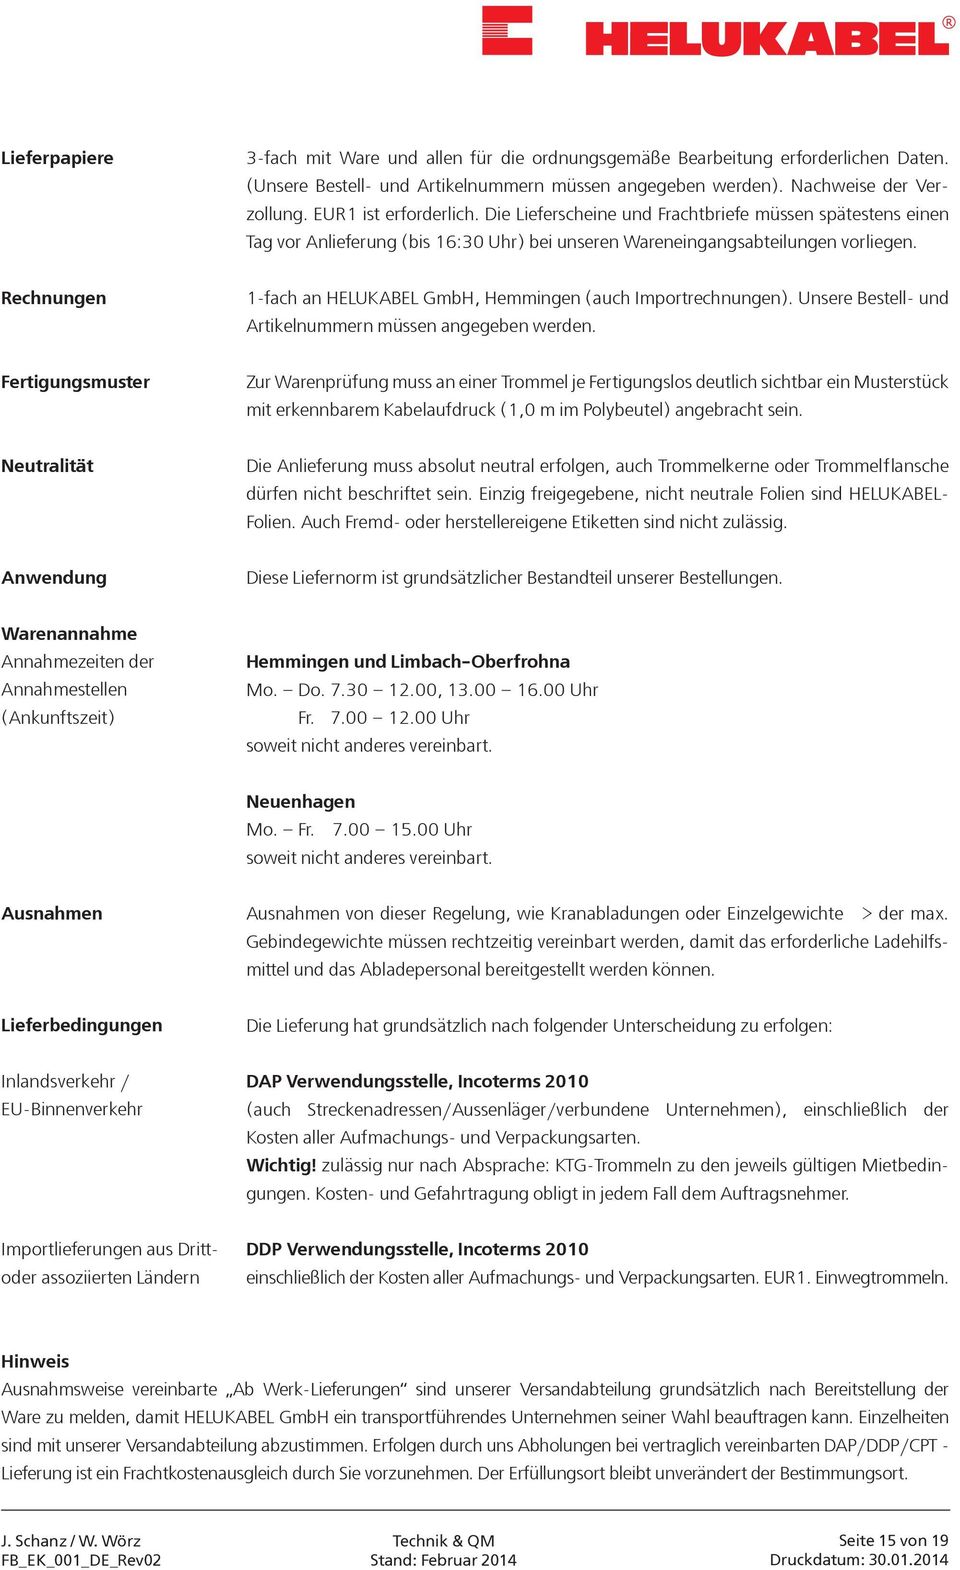 Rechnungen 1-fach an HELUKABEL GmbH, Hemmingen (auch Importrechnungen). Unsere Bestell- und Artikelnummern müssen angegeben werden.